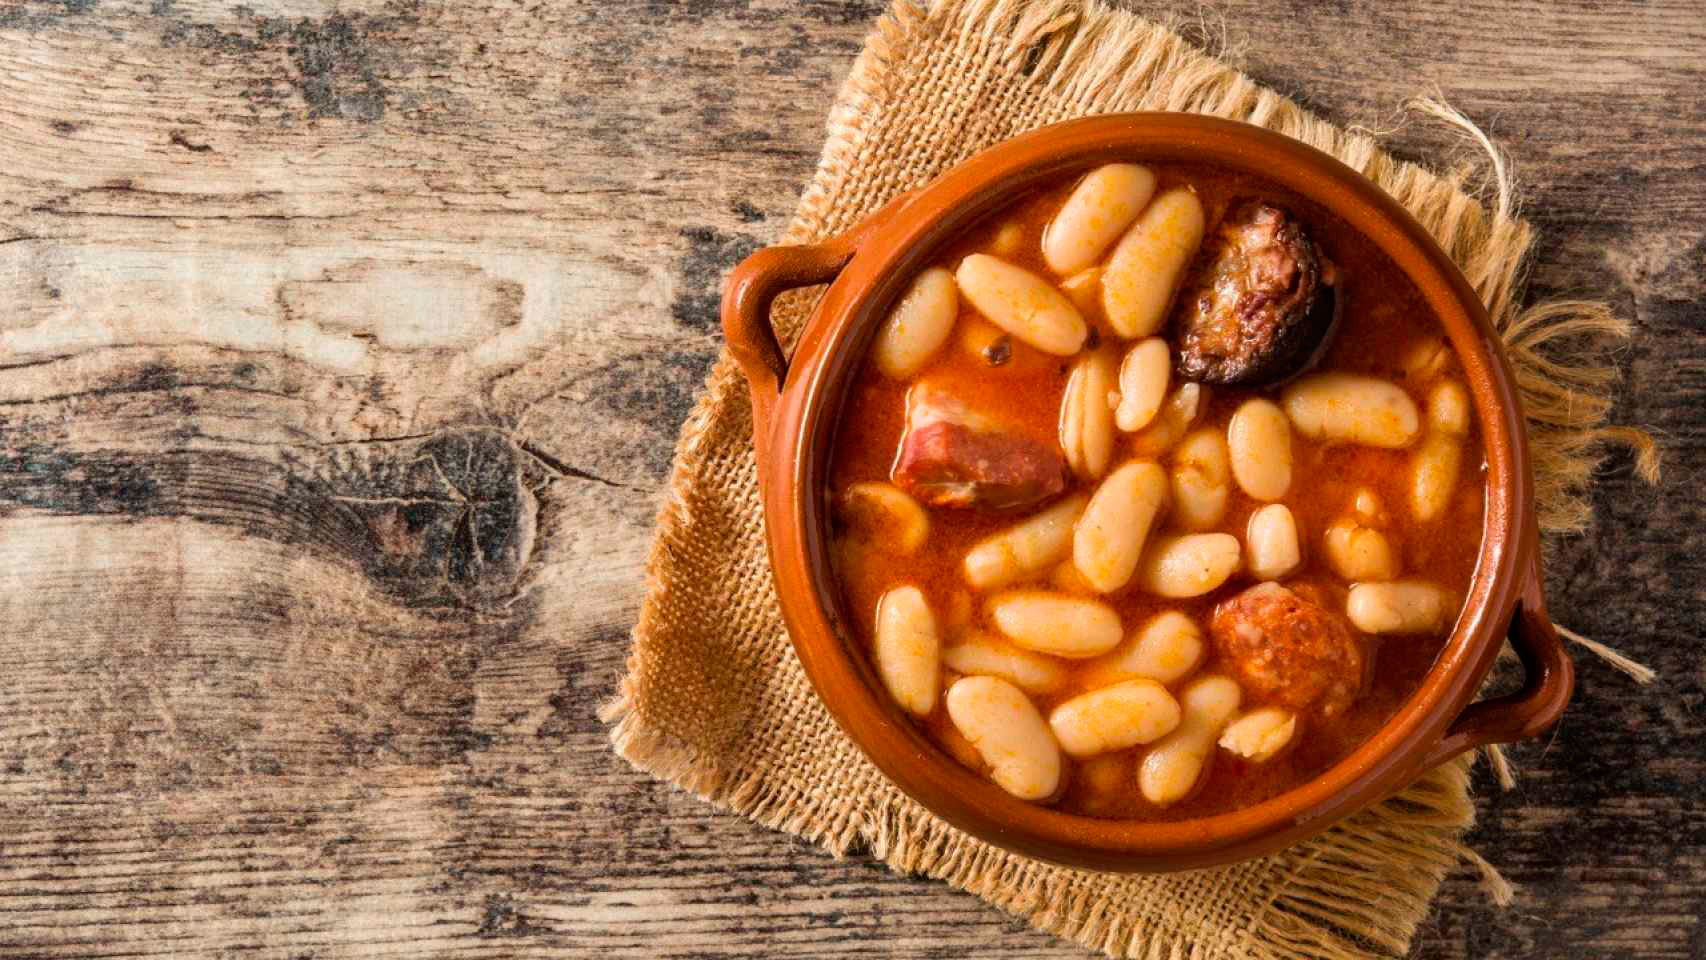 Jornadas de Cocina Asturiana en Menorca | Jornades de Cuina Asturiana a Menorca